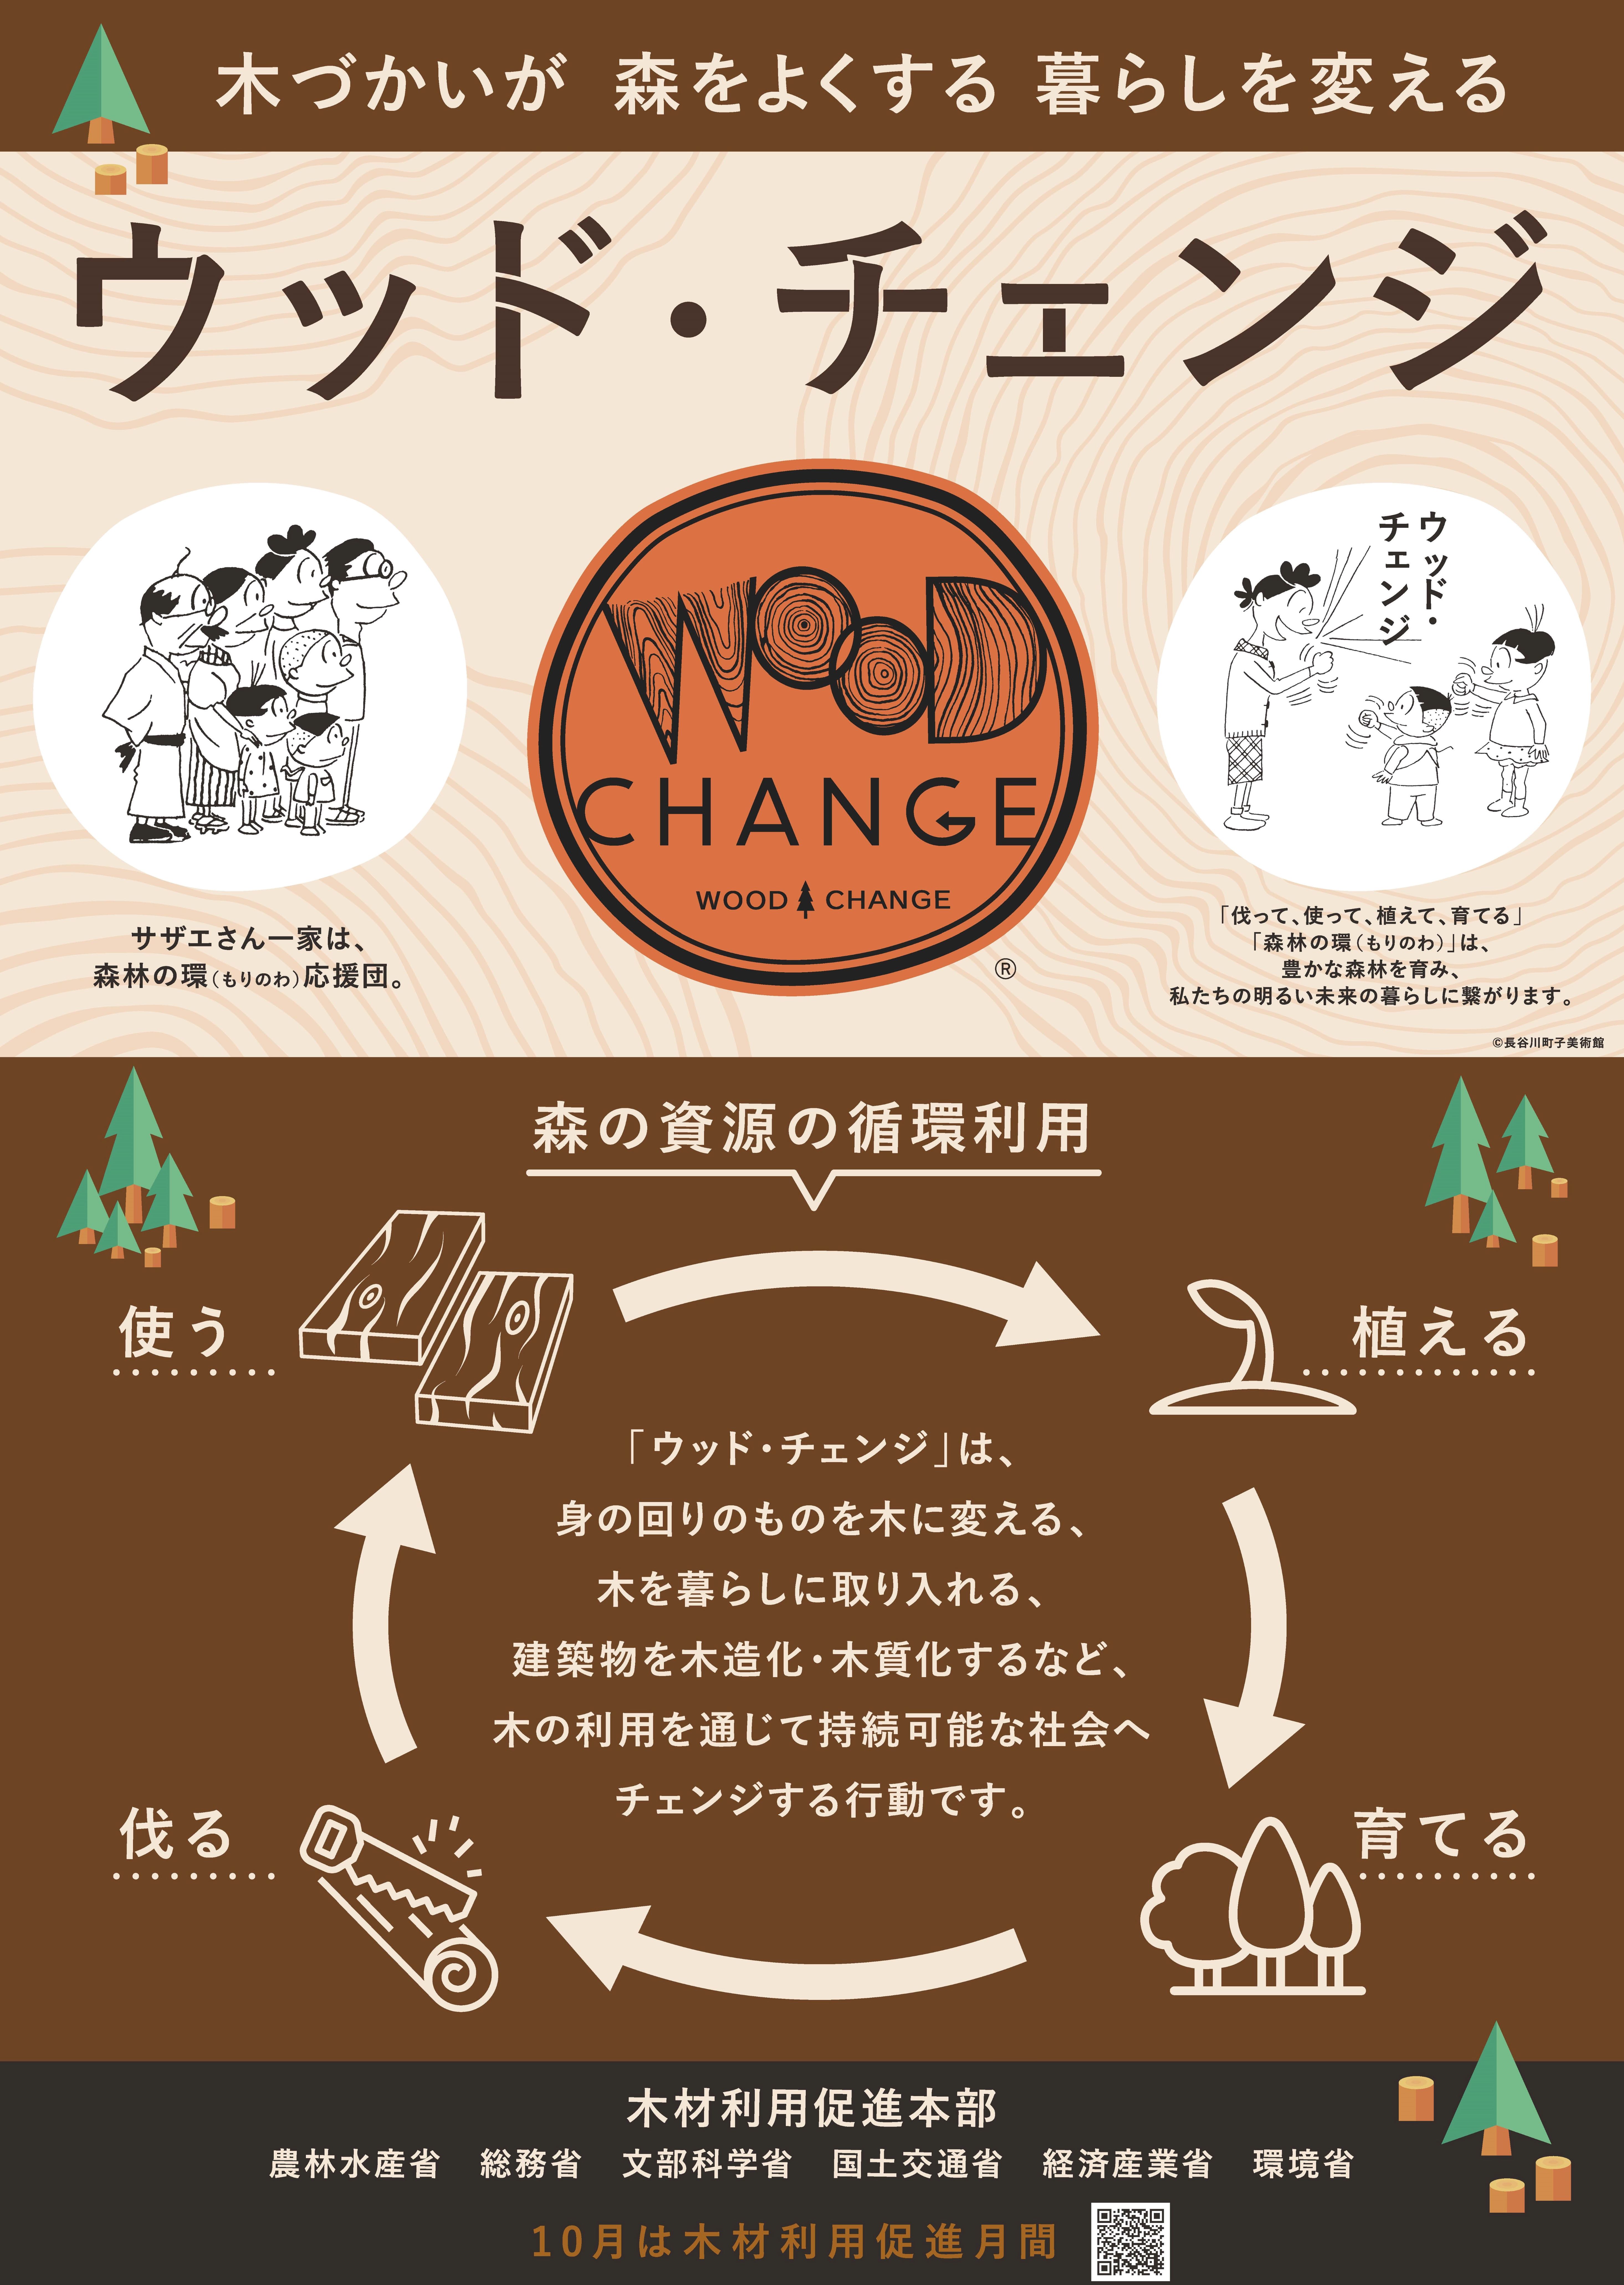 10月は「木材利用促進月間」です～ウッド・チェンジ 木づかいが 森をよくする 暮らしを変える～